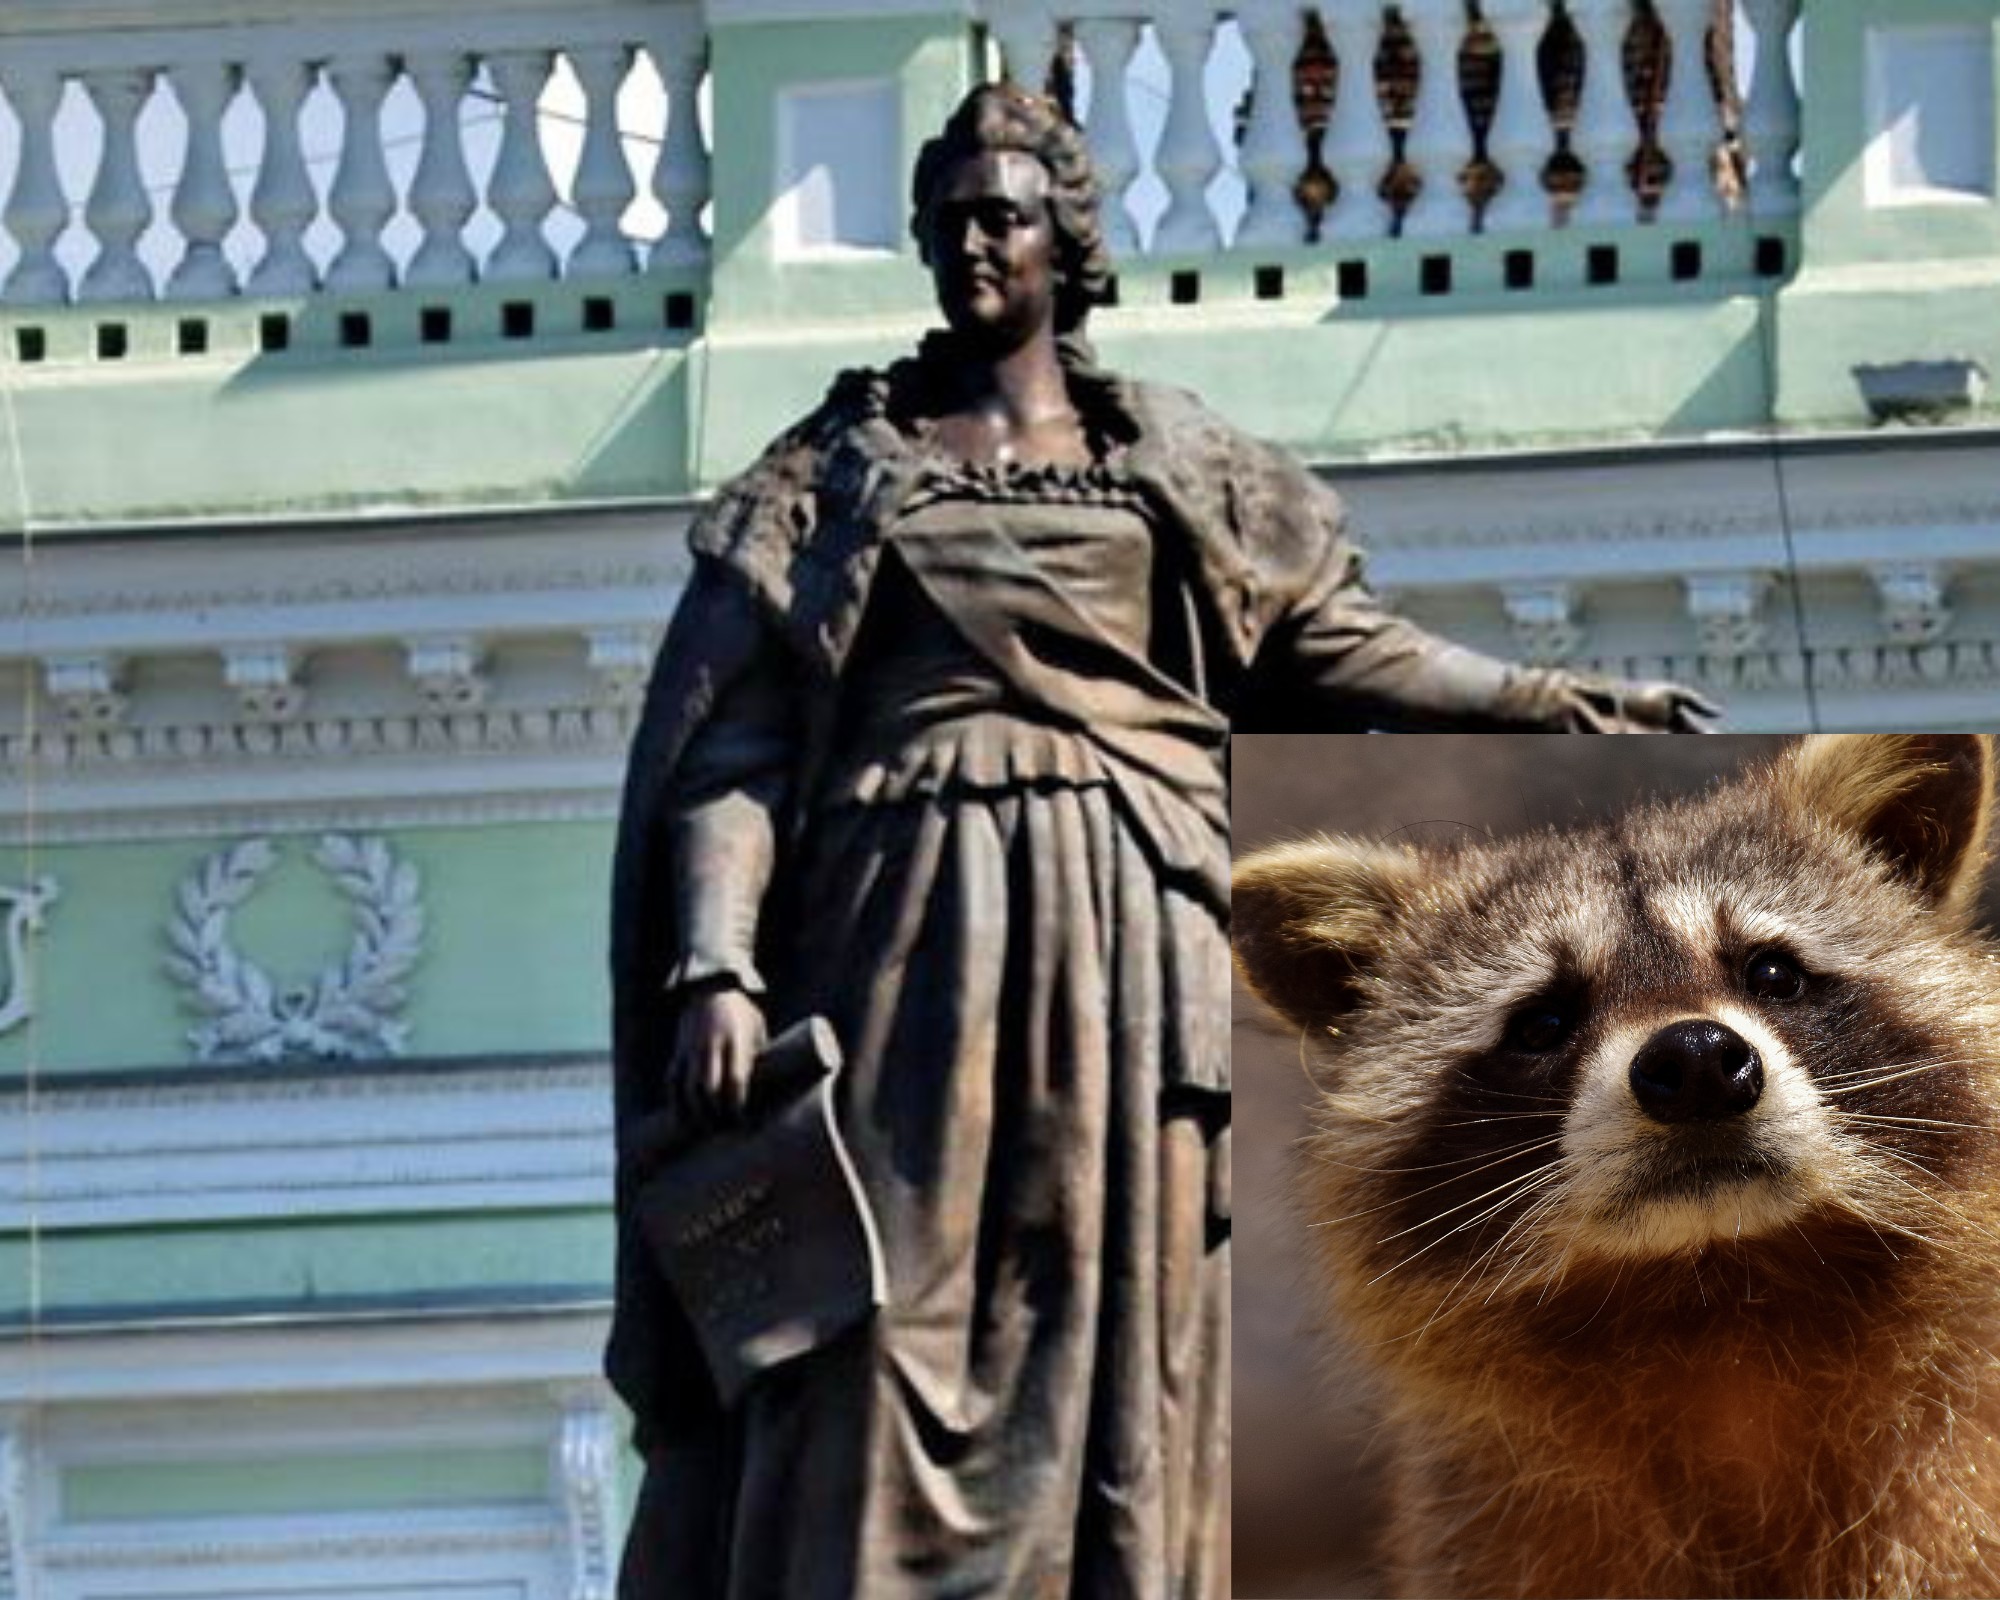 Єнота, украденого росіянами з Херсона, пропонують обміняти на одеський пам’ятник Катерині ІІ – петиція